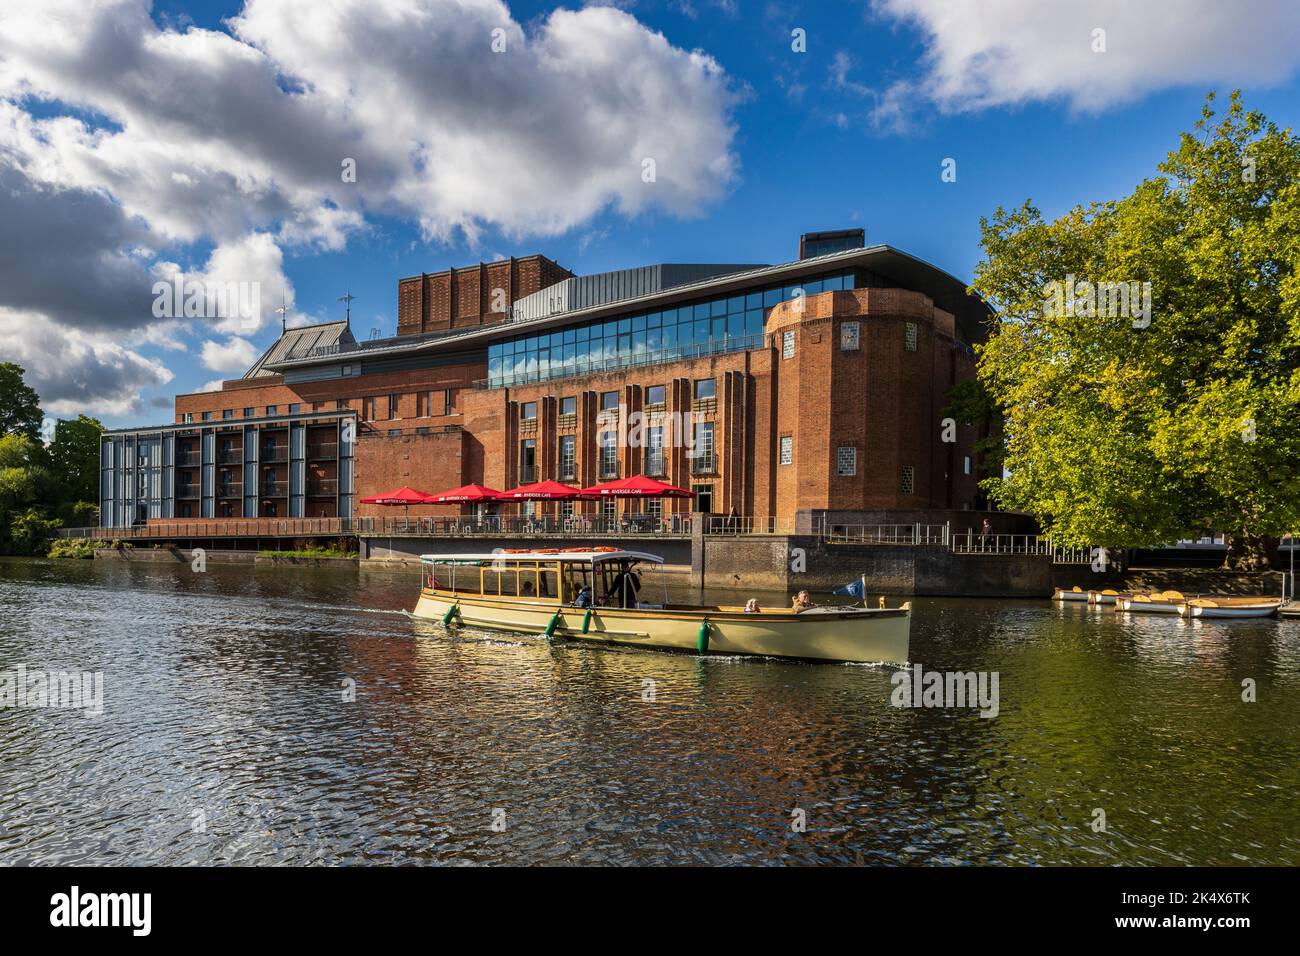 Une croisière sur la rivière en bateau passant par le RSC Theatre à Stratford-upon-Avon, Warwickshire, Angleterre Banque D'Images